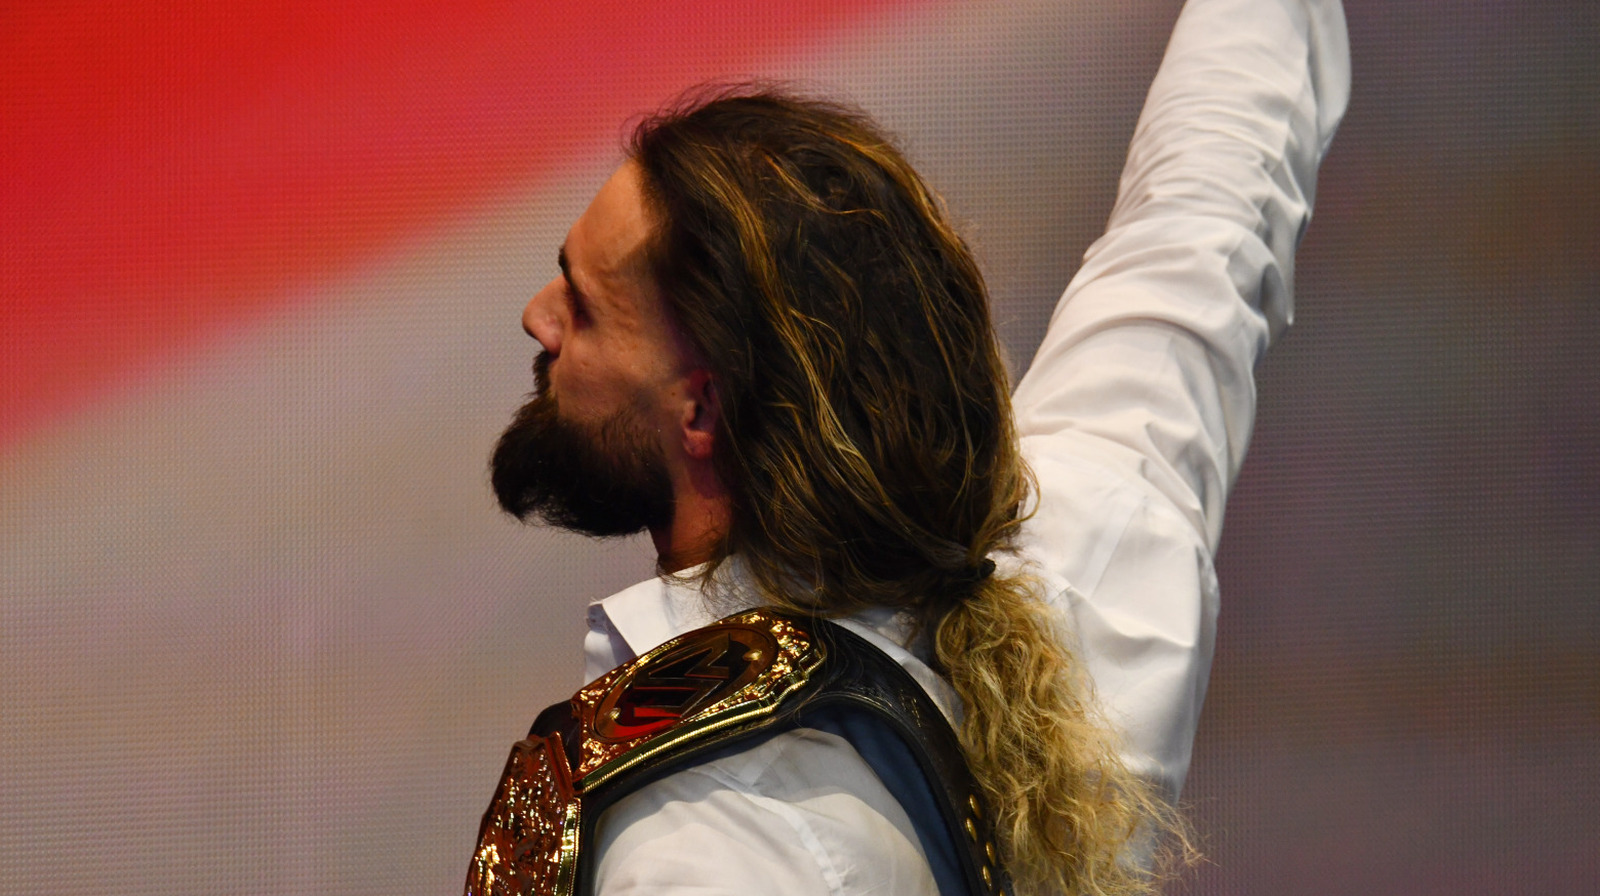 Seth Rollins vence a Finn Balor en WWE Summerslam y retiene el título mundial de peso pesado